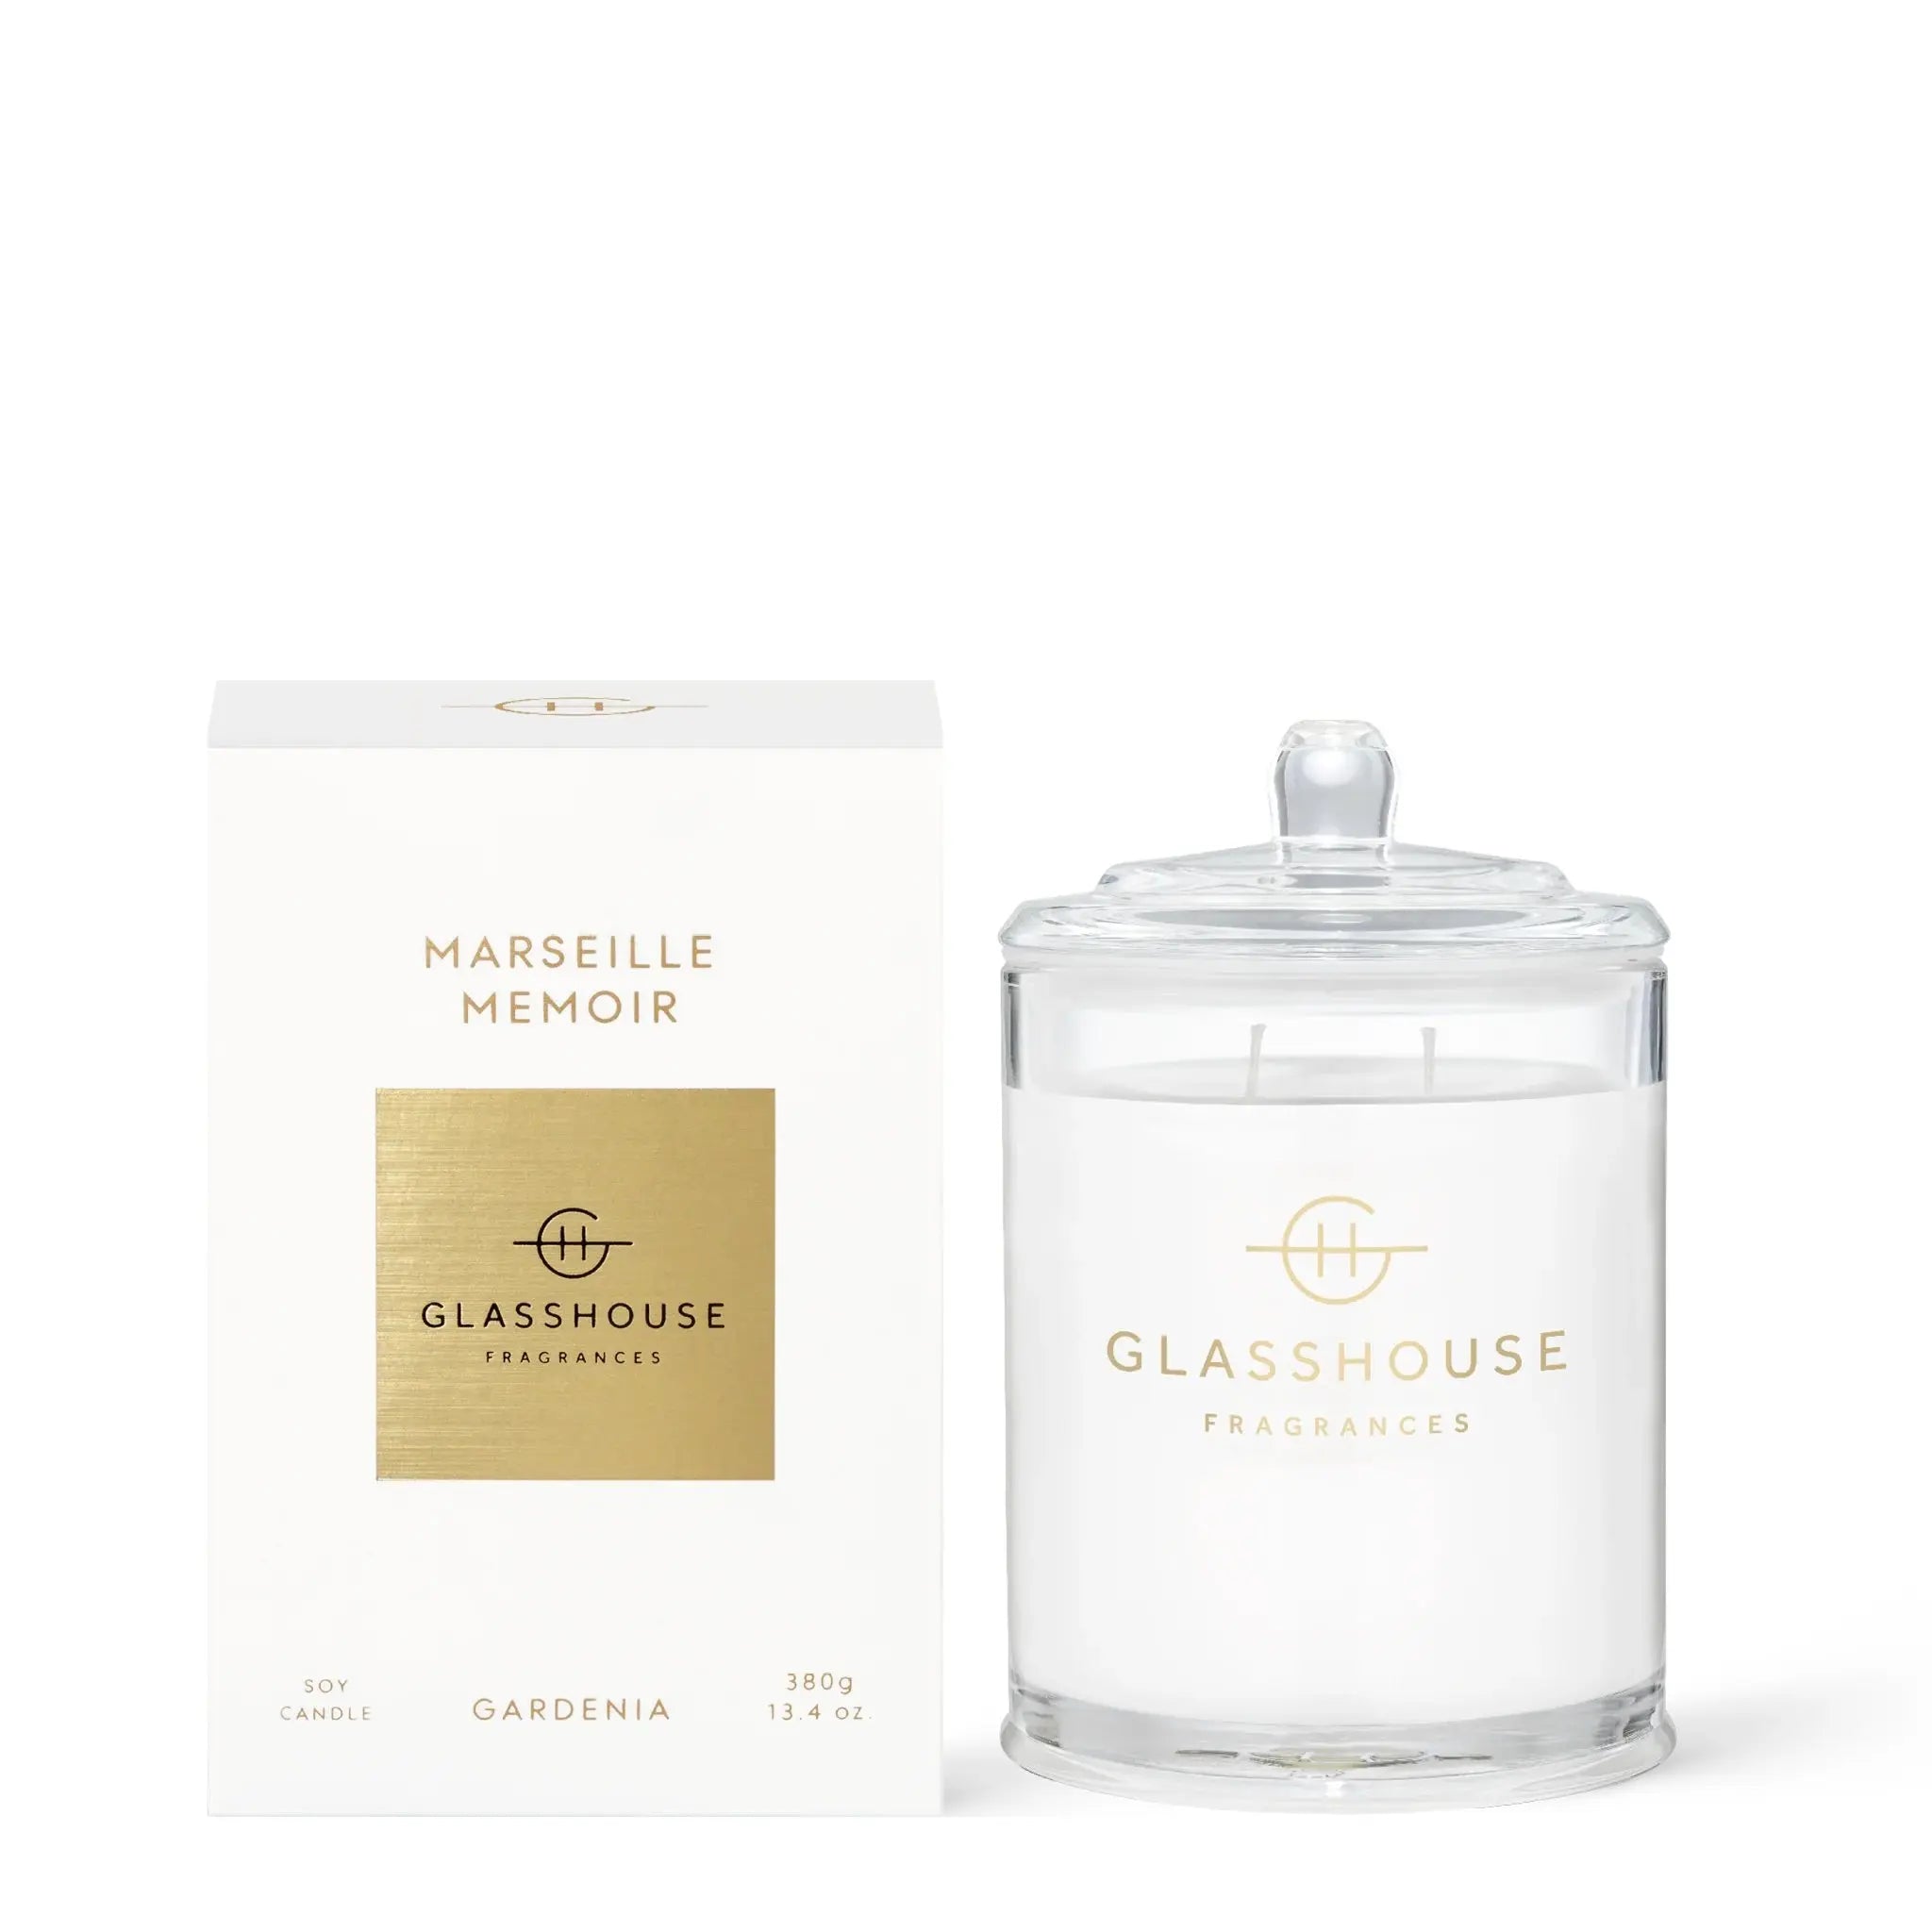 Glasshouse Fragrances Marseille Memoir Soy Candle Gardenia 380 grams 13.4 ounces